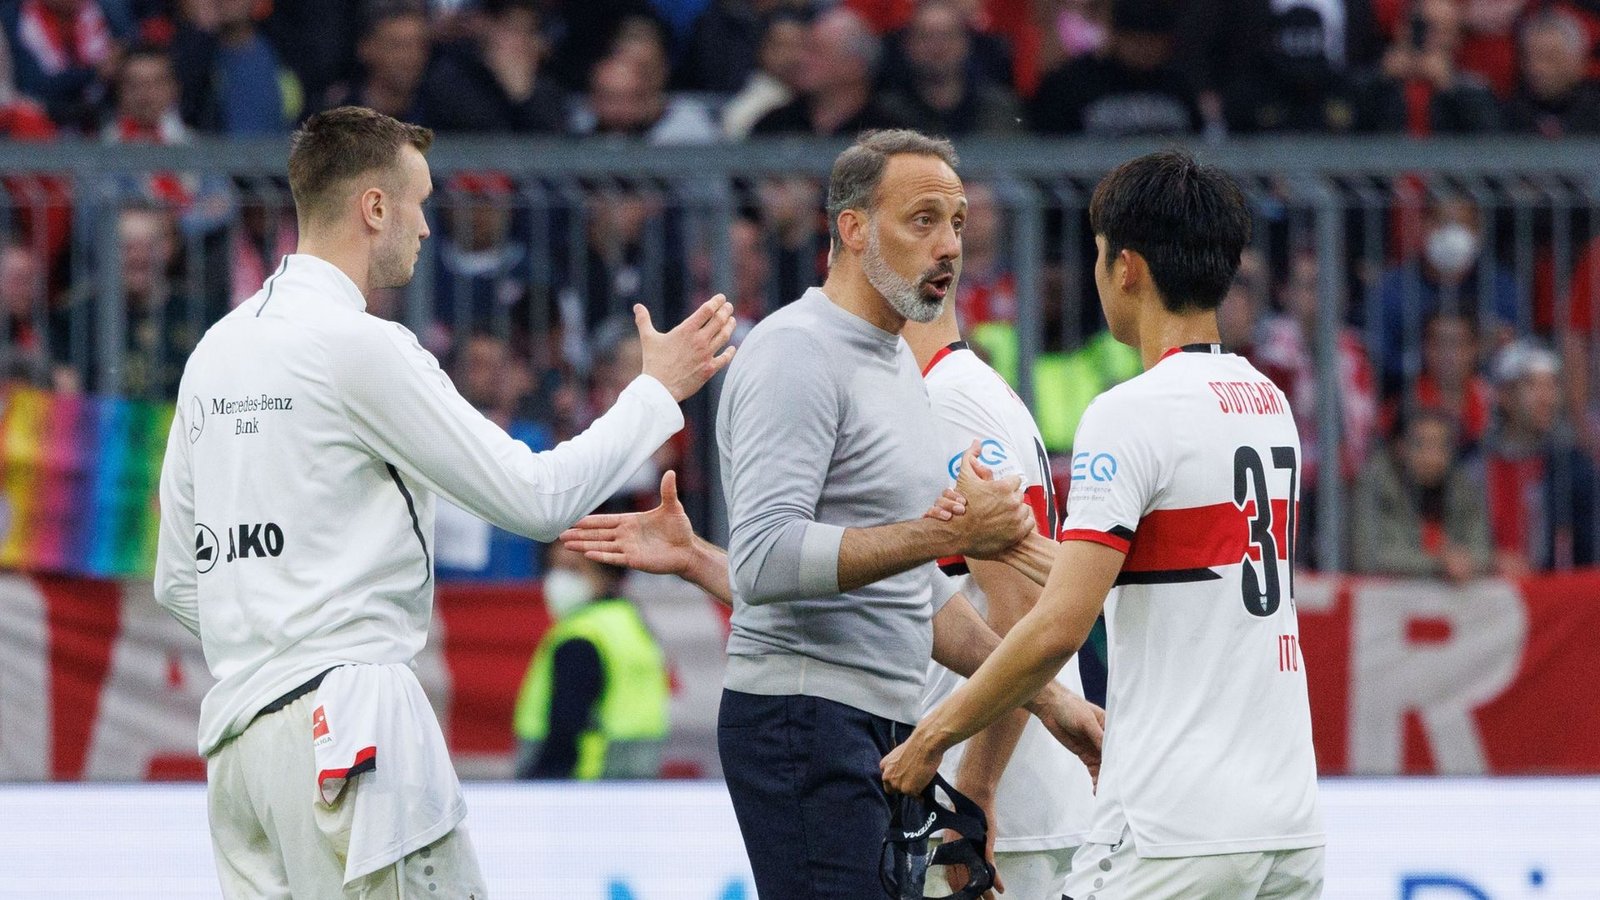 Der VfB Stuttgart muss den 1. FC Köln am letzten Spieltag besiegen, um die Chancen aufrecht zu erhalten Hertha BSC noch von Platz 15 zu verdrängen.Foto: Matthias Balk/dpa